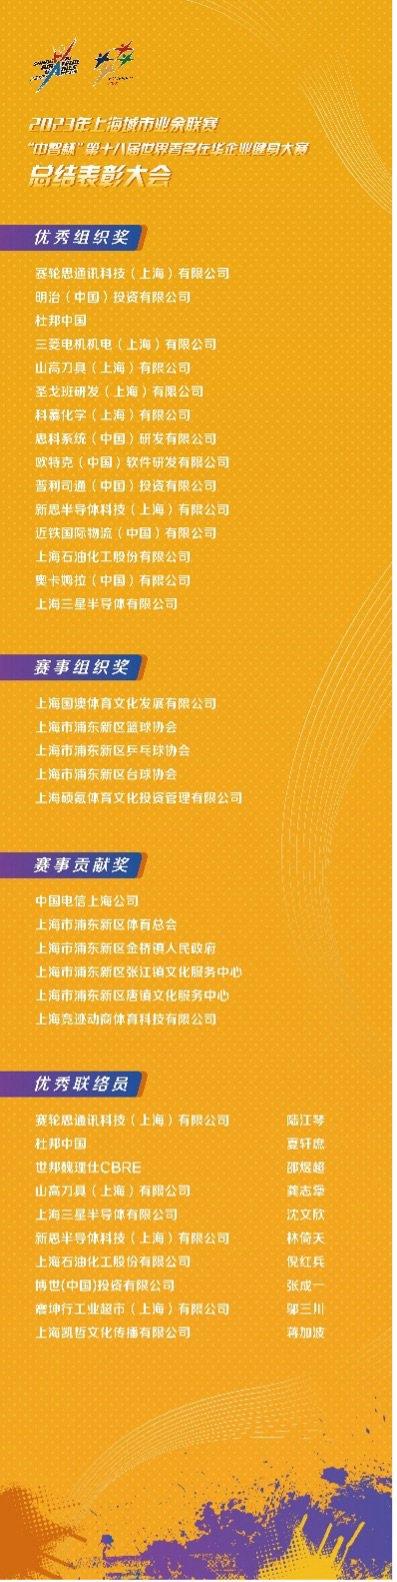 打造白领体育健身平台的“上海样本” “中智杯”第十八届世界著名在华企业健身大赛落幕